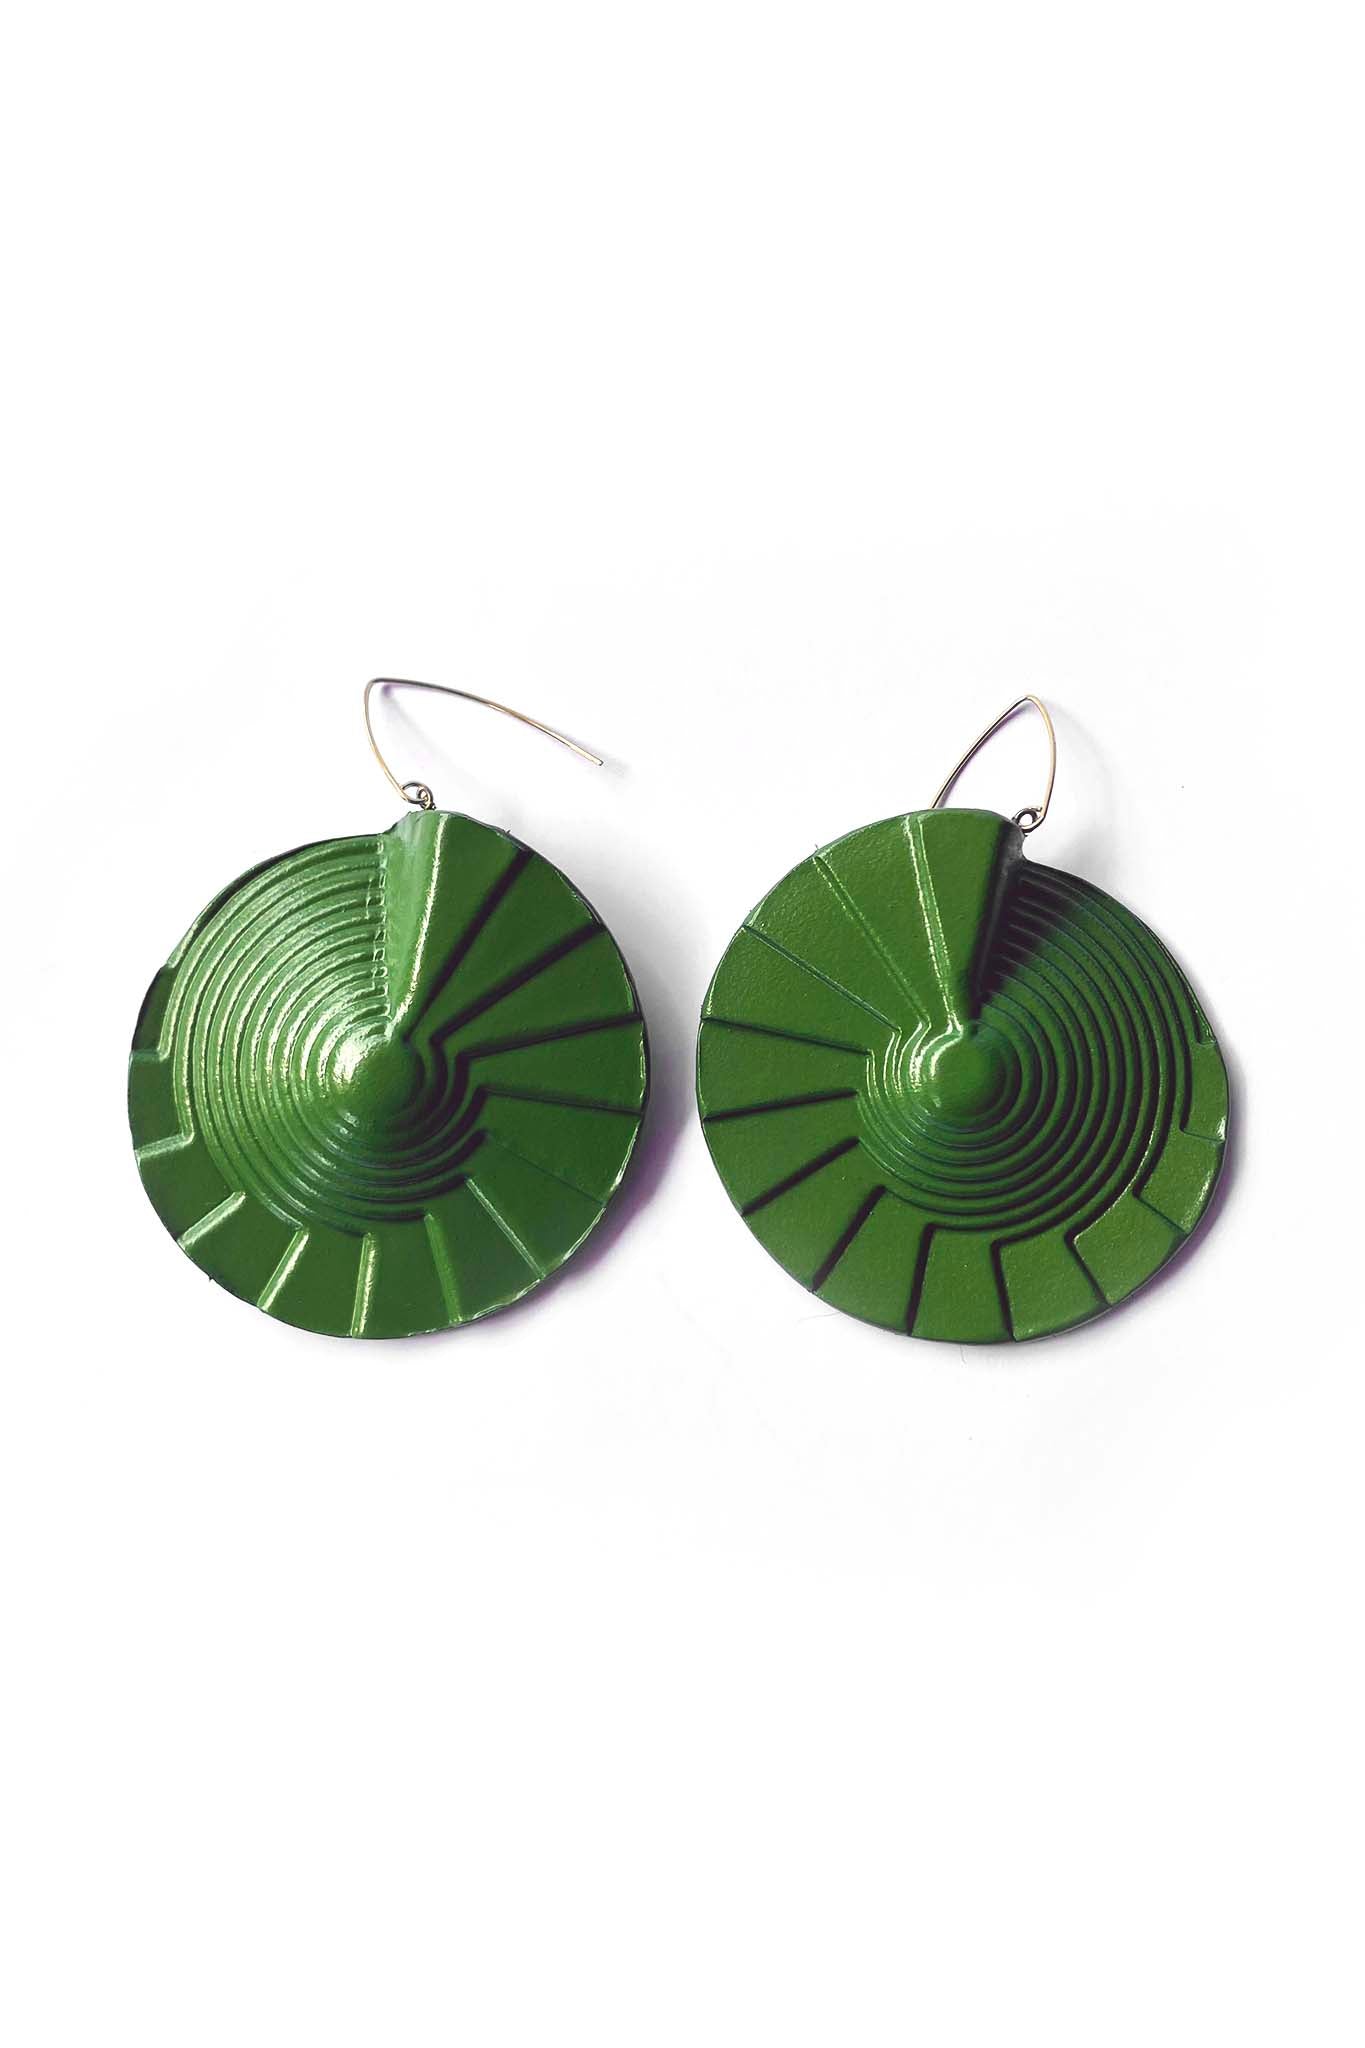 Leigh Schubert Spiral Earrings Green.